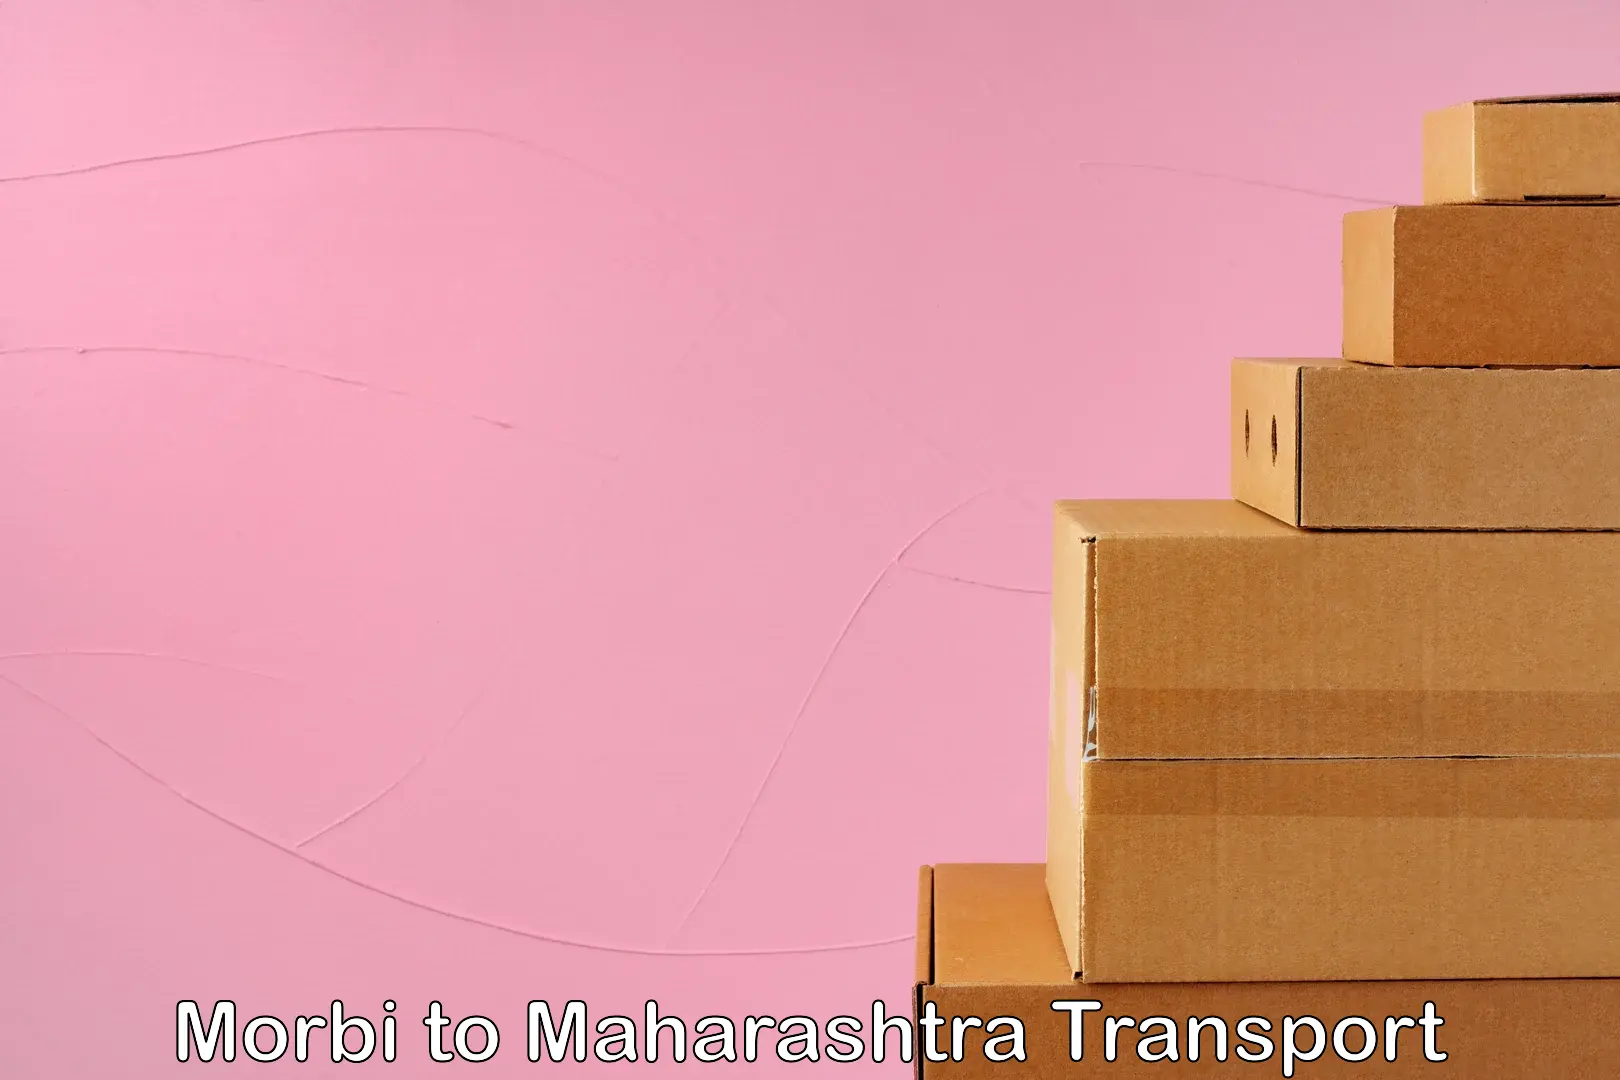 Road transport online services Morbi to Sindhudurg